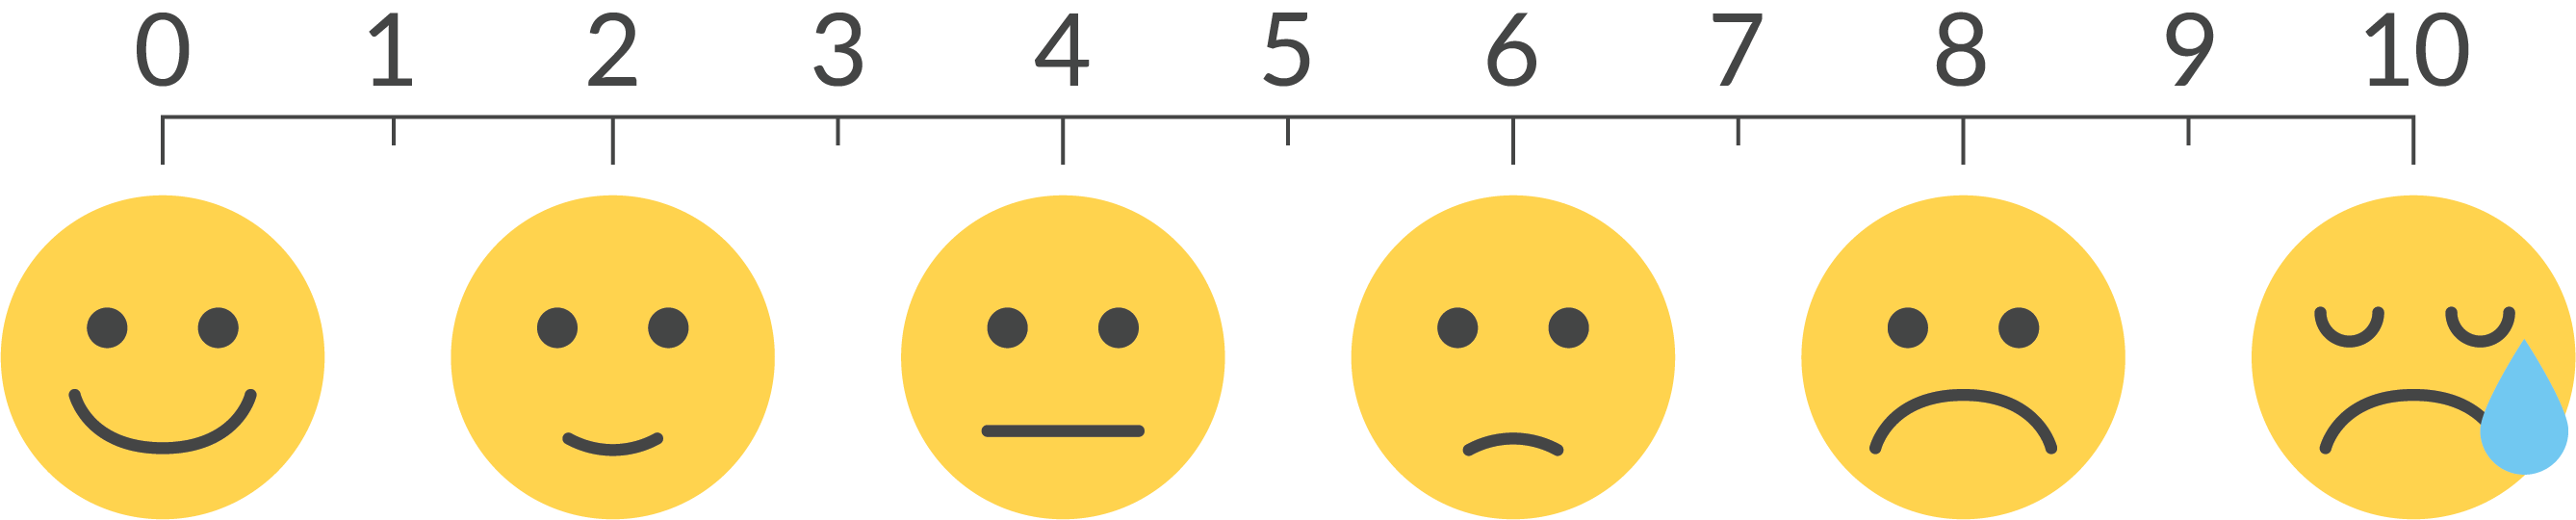 โลกทางการแพทย์ต้องการ Emoji ช่วยให้หมอสื่อสารกับคนไข้ได้ง่ายขึ้น